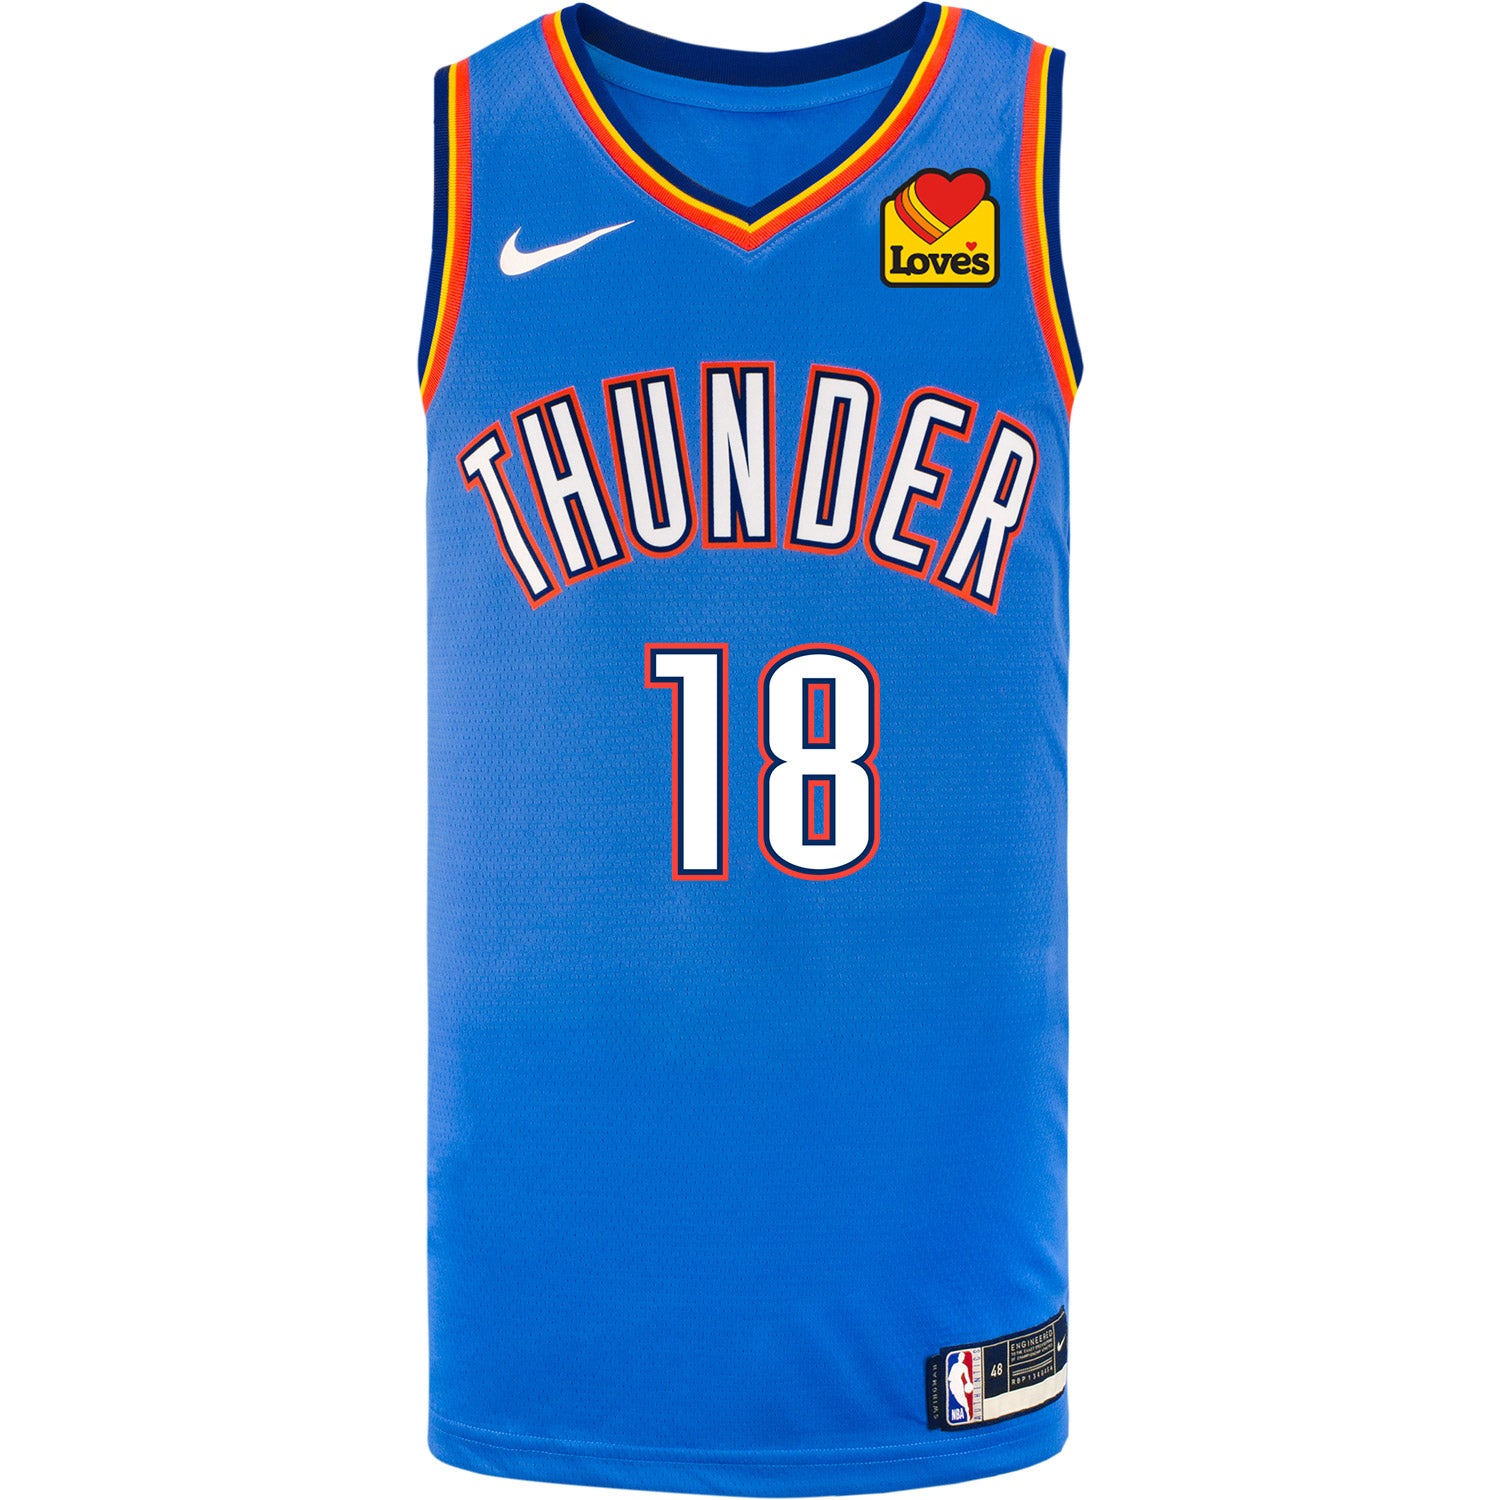 Oklahoma City Thunder shooting guard jersey